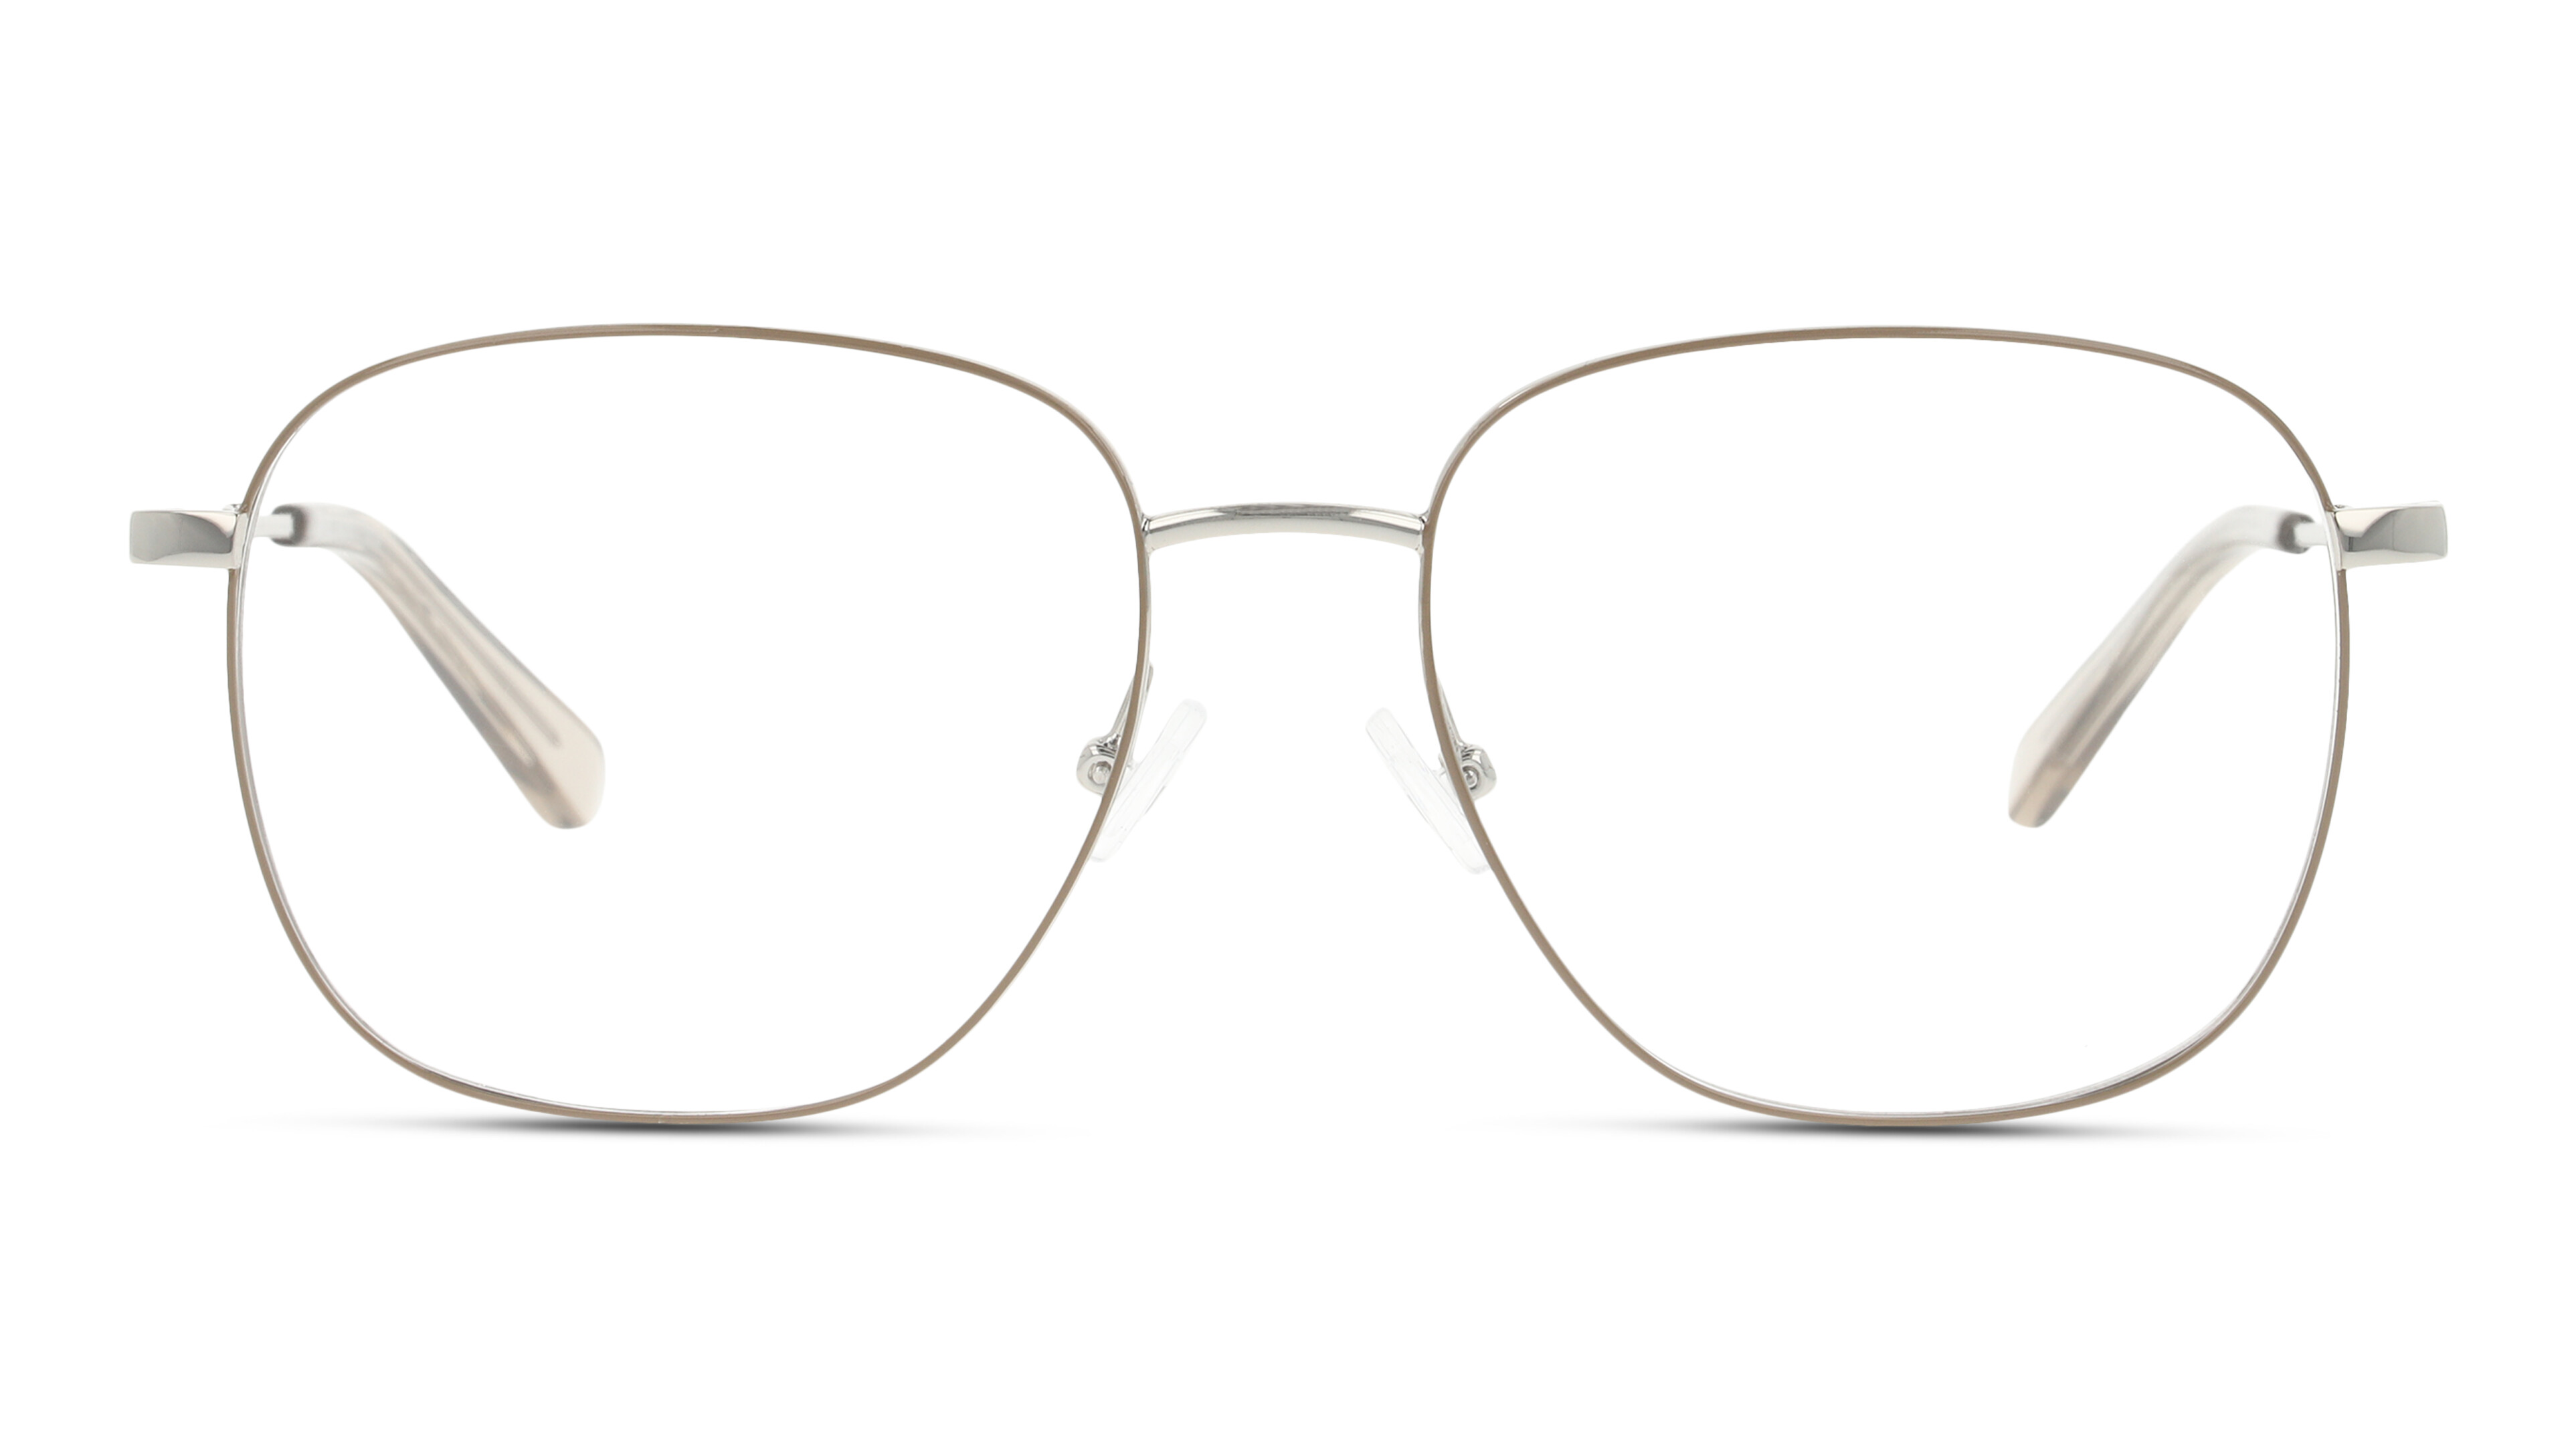 Front UNOFFICIAL UNOM0259 ES00 Brille Beige, Silberfarben